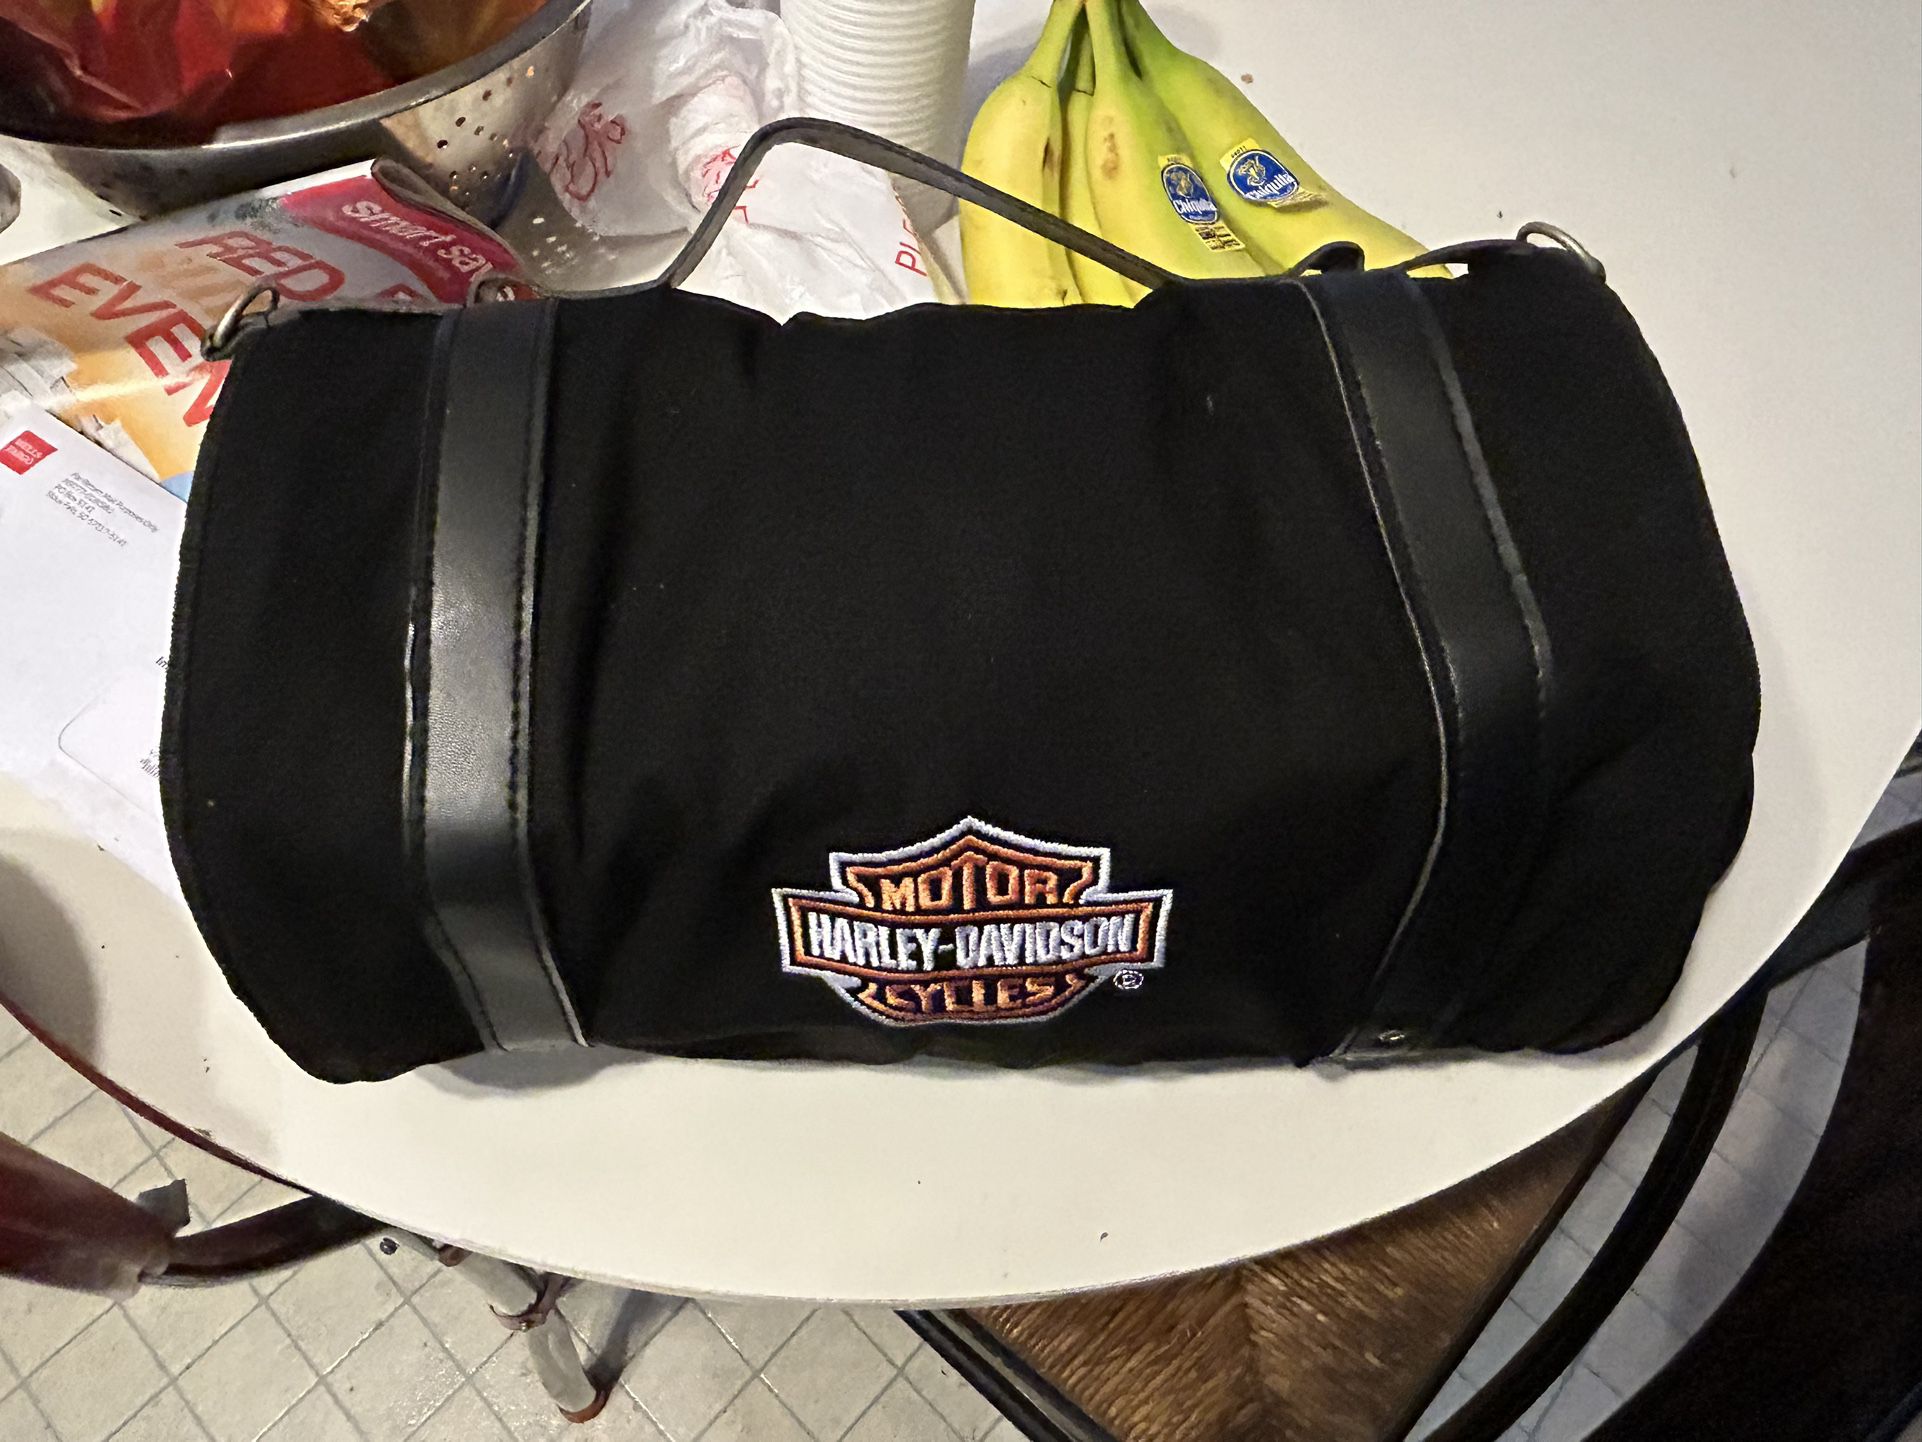 harley davidson roll up travel bag